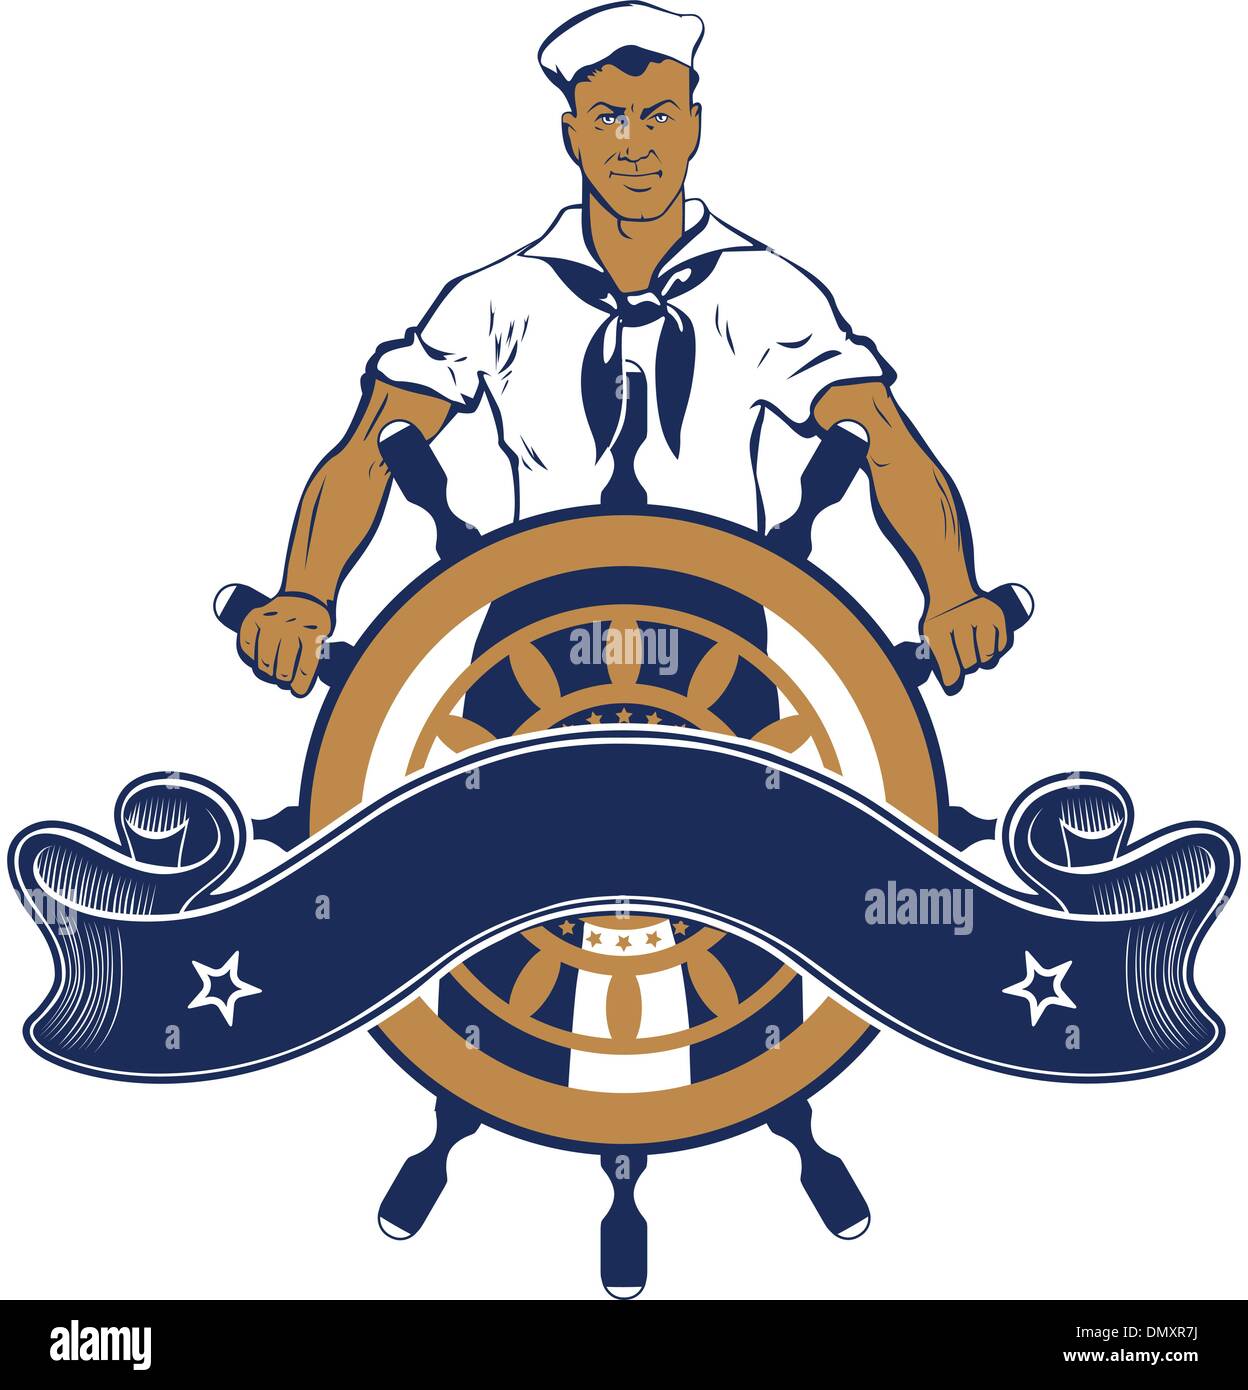 sailor man emblem Stock Vector